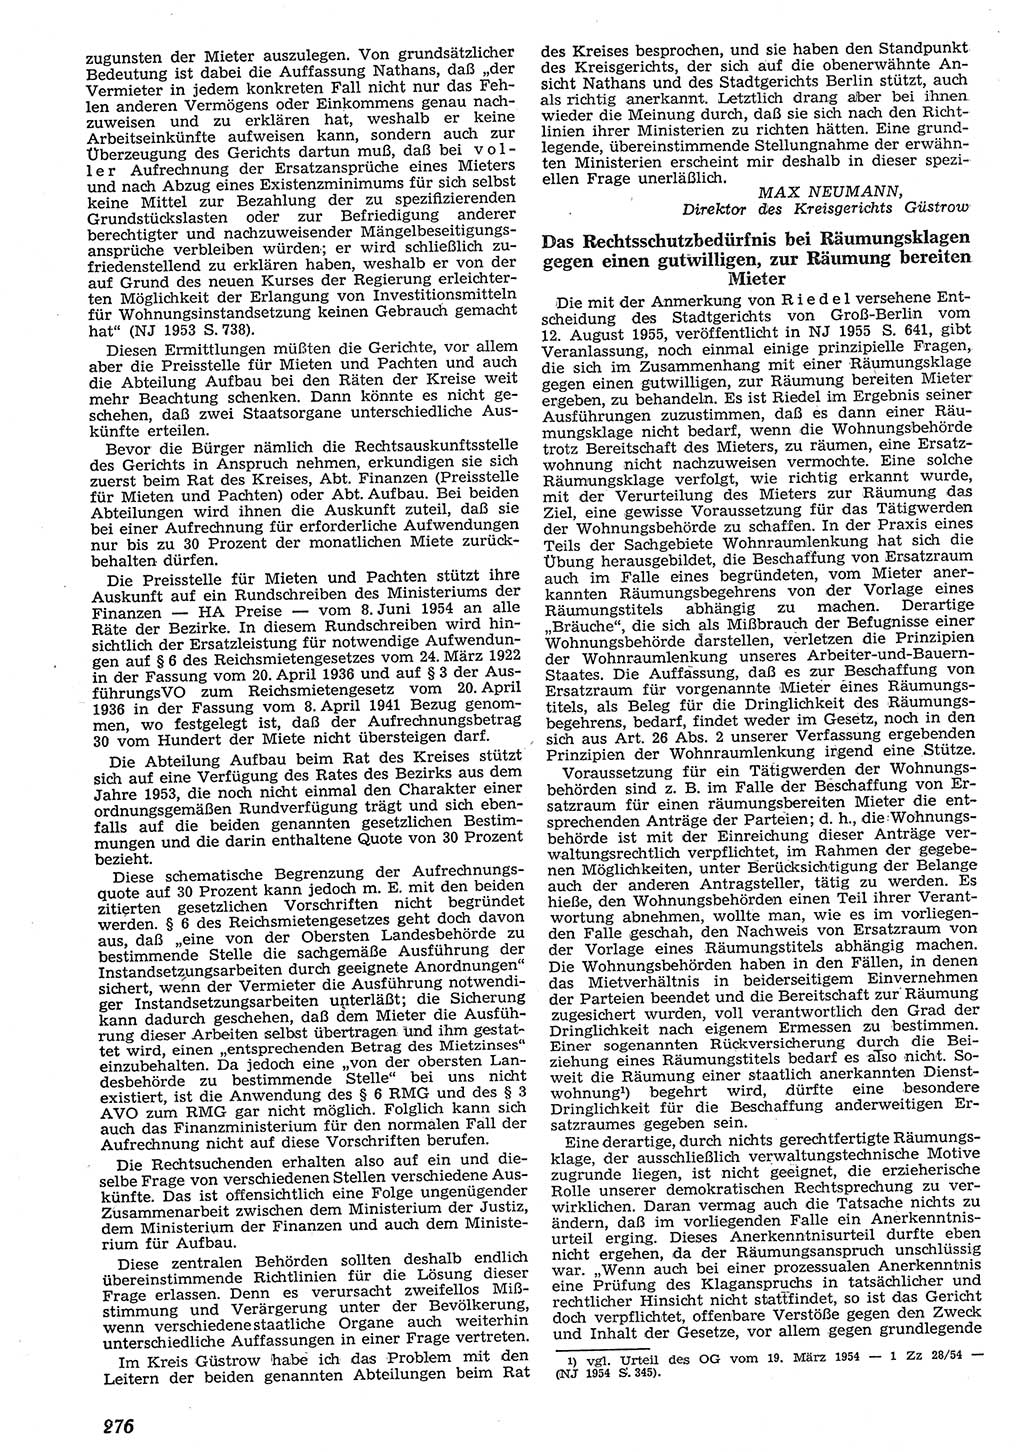 Neue Justiz (NJ), Zeitschrift für Recht und Rechtswissenschaft [Deutsche Demokratische Republik (DDR)], 10. Jahrgang 1956, Seite 276 (NJ DDR 1956, S. 276)